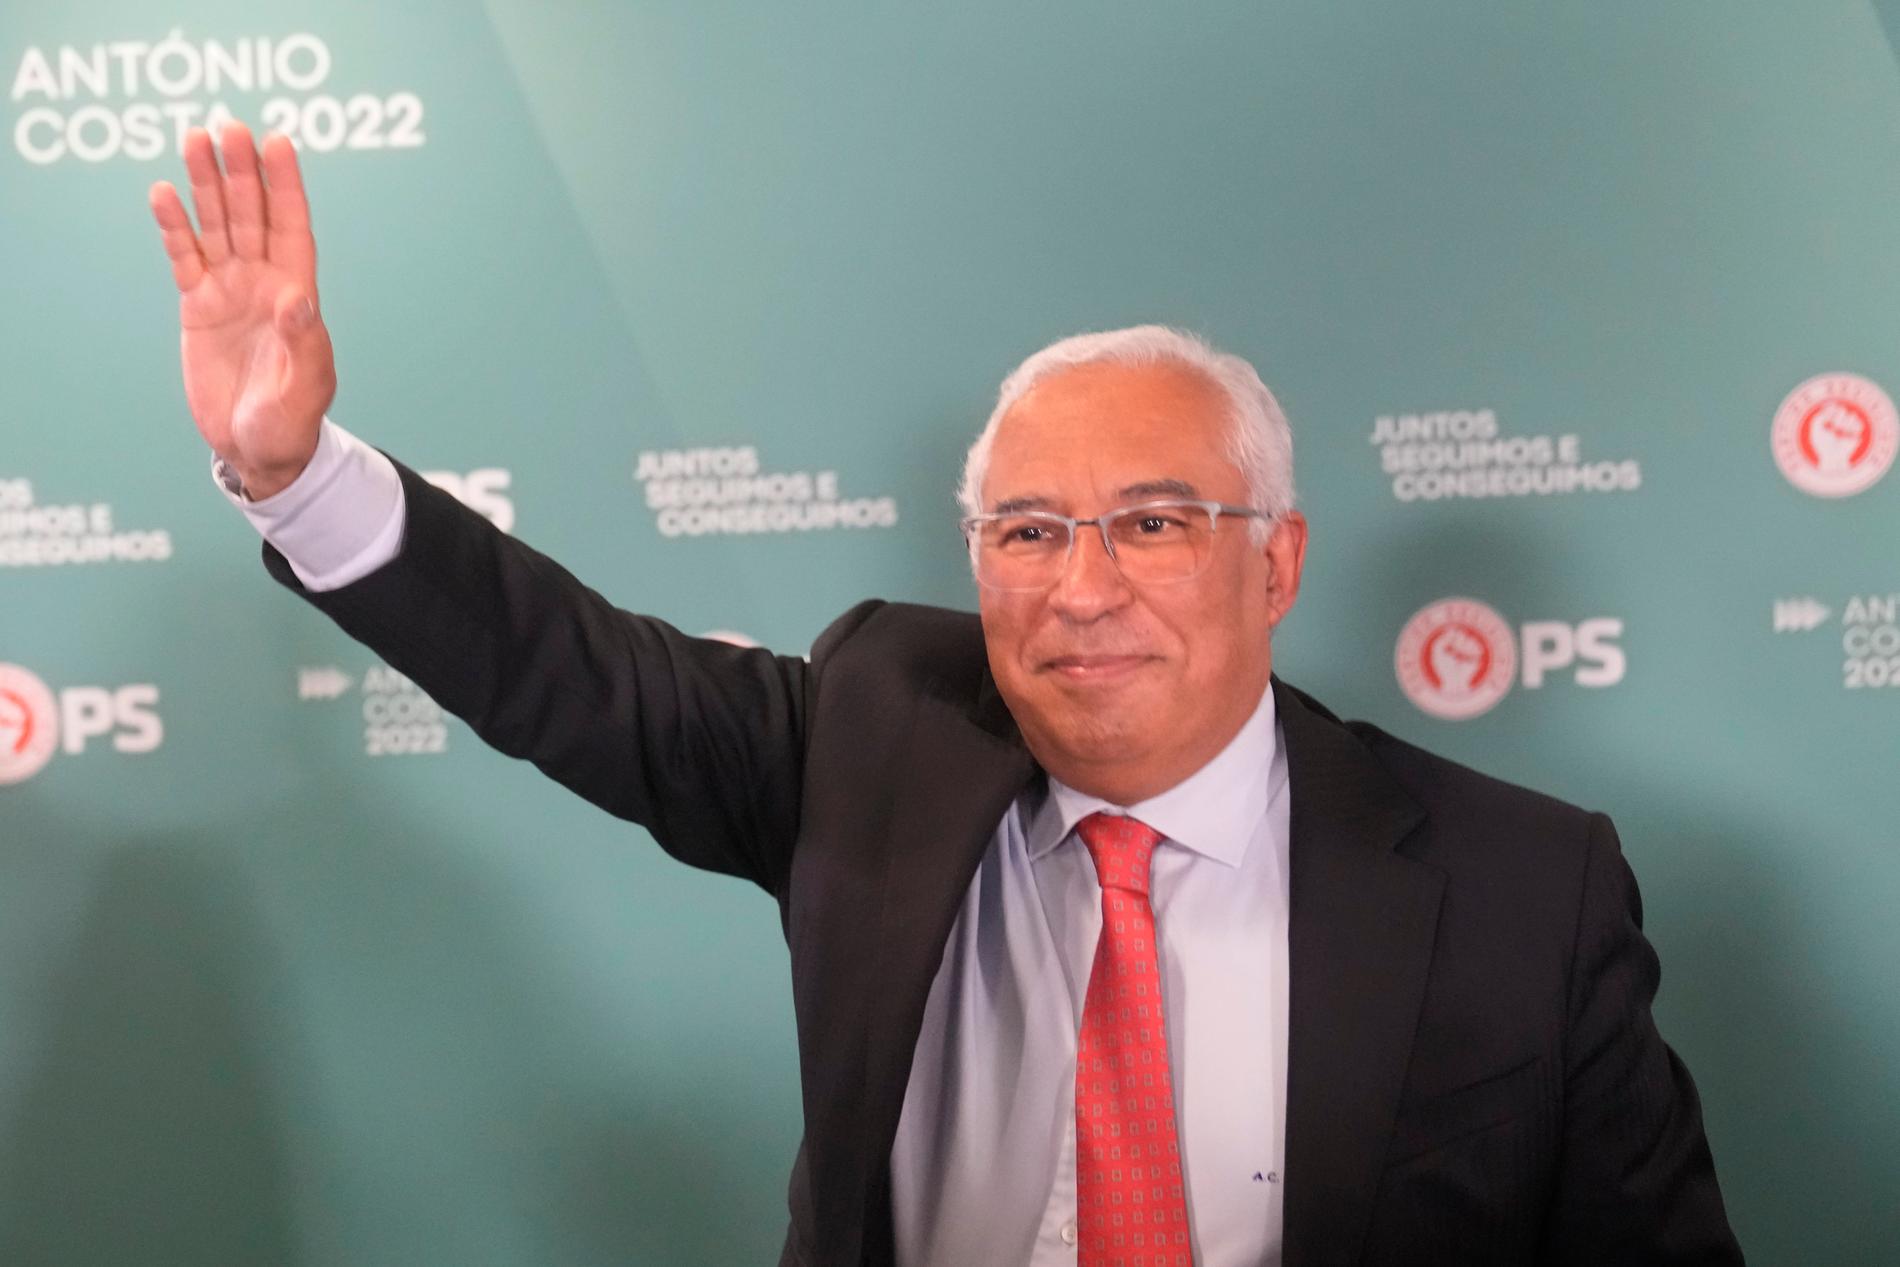 António Costas socialistparti fick över 40 procent av rösterna i det portugisiska valet på söndagen.